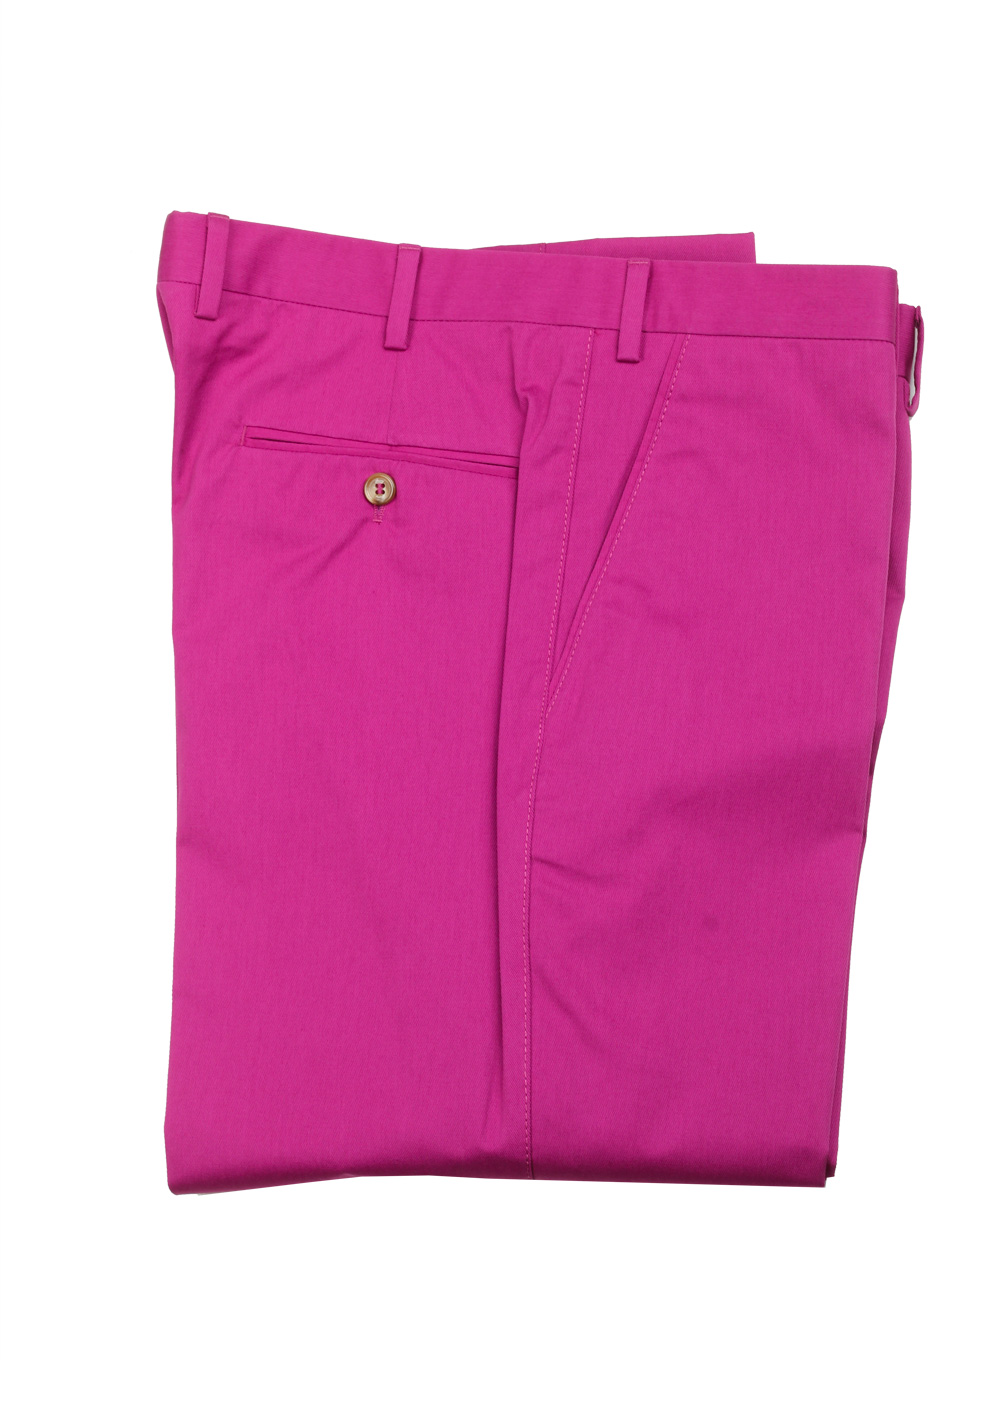 Brioni Pink Trousers Size 48 / 32 U.S. | Costume Limité